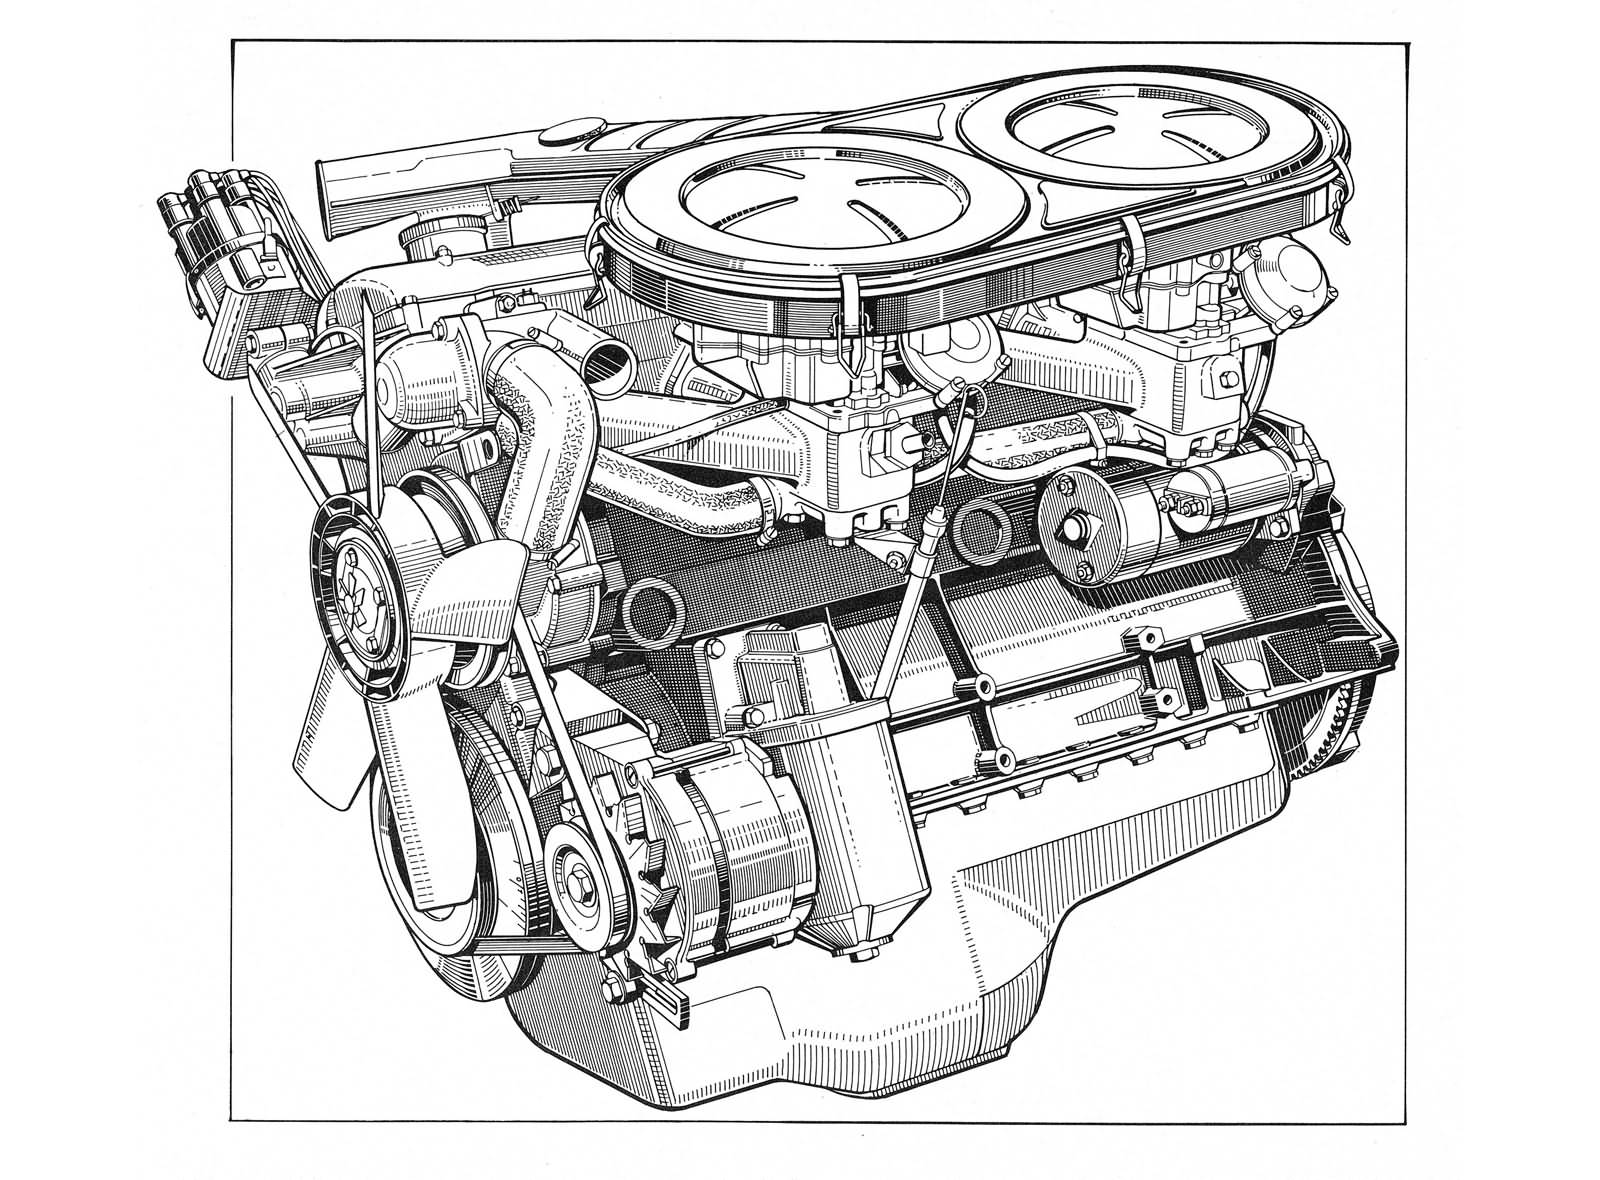 1968 - BMW 2500 Motor, berühmt für seinen Turbinenartigen Lauf